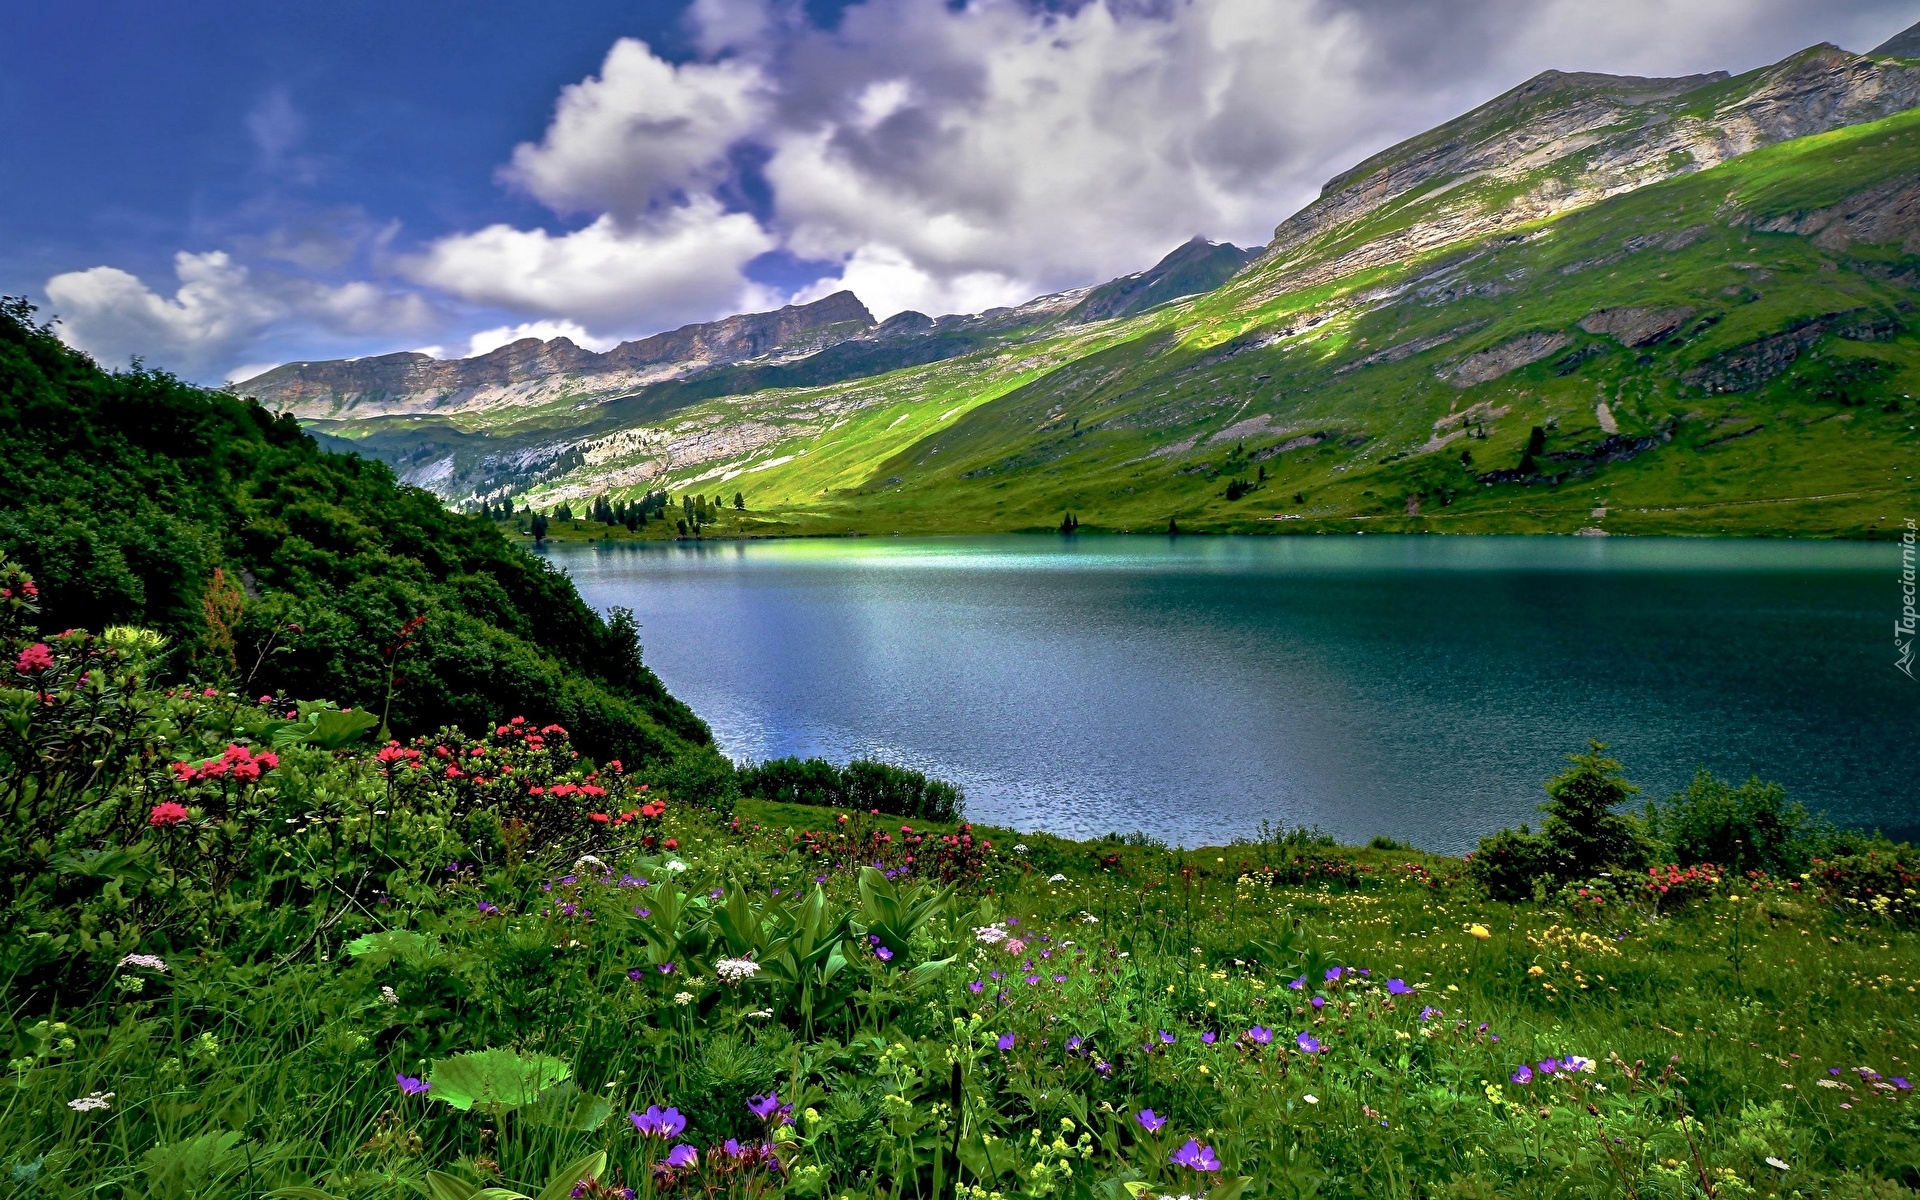 Jezioro Engstlensee, Góry Alpy, Chmury, Łąka, Kwiaty, Trawa, Krzewy, Drzewa, Roślinność, Kanton Berno, Szwajcaria